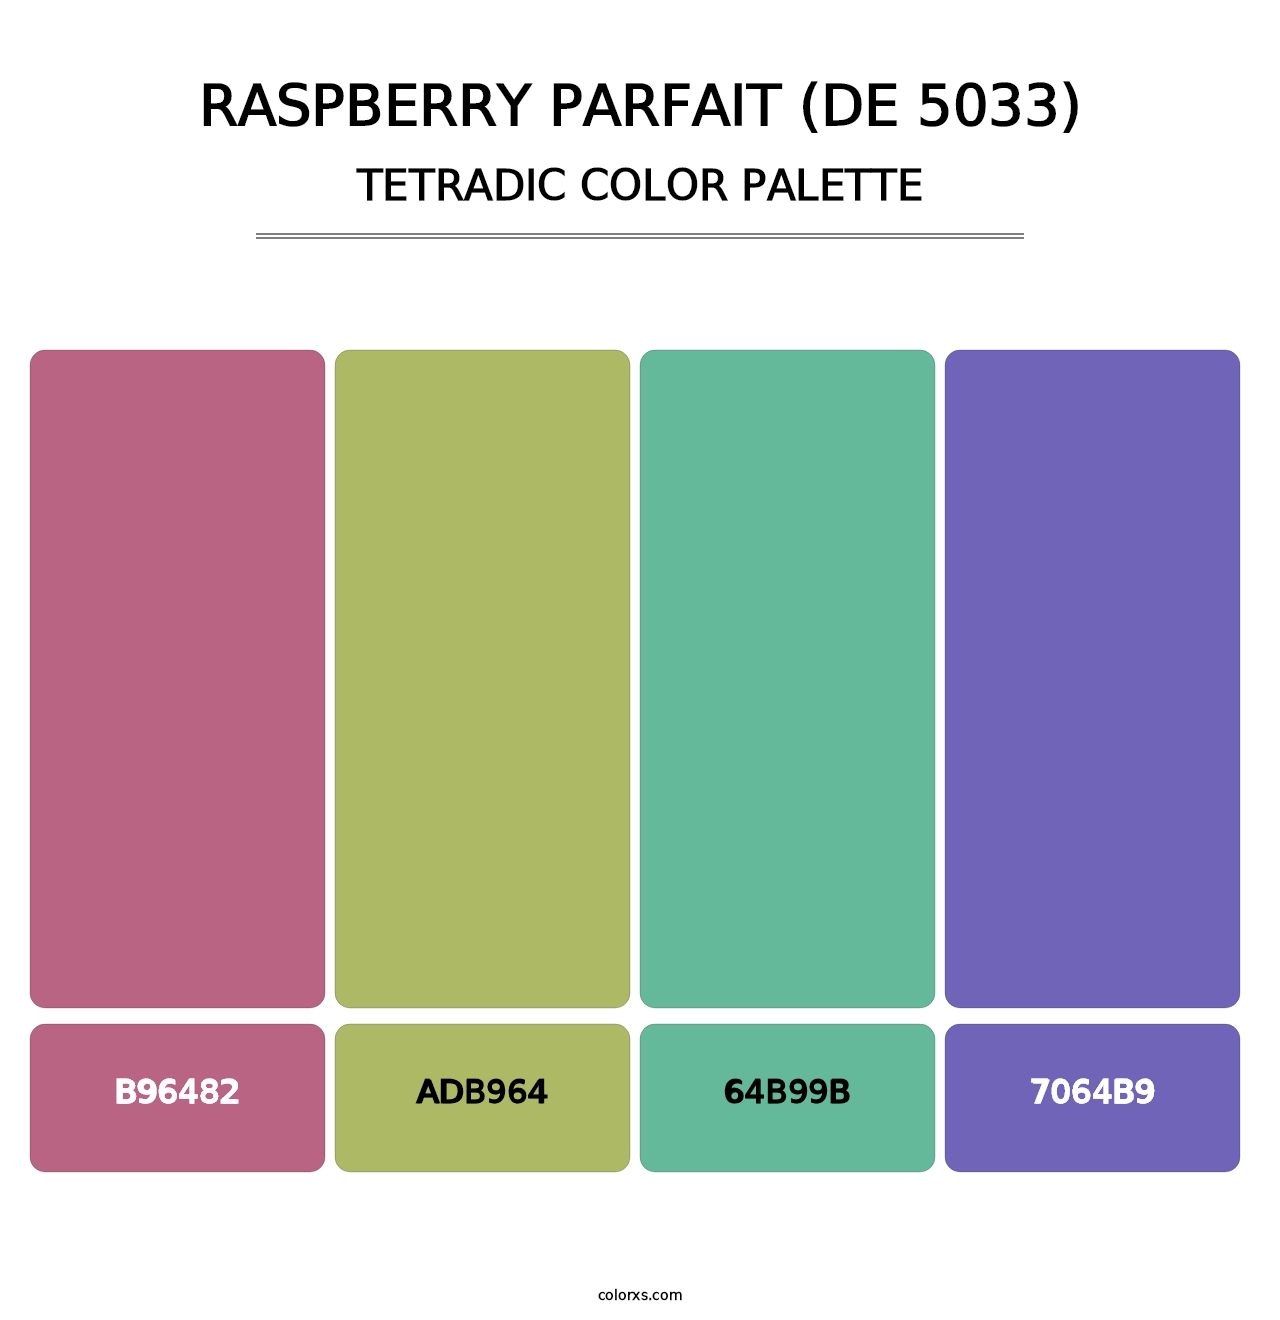 Raspberry Parfait (DE 5033) - Tetradic Color Palette